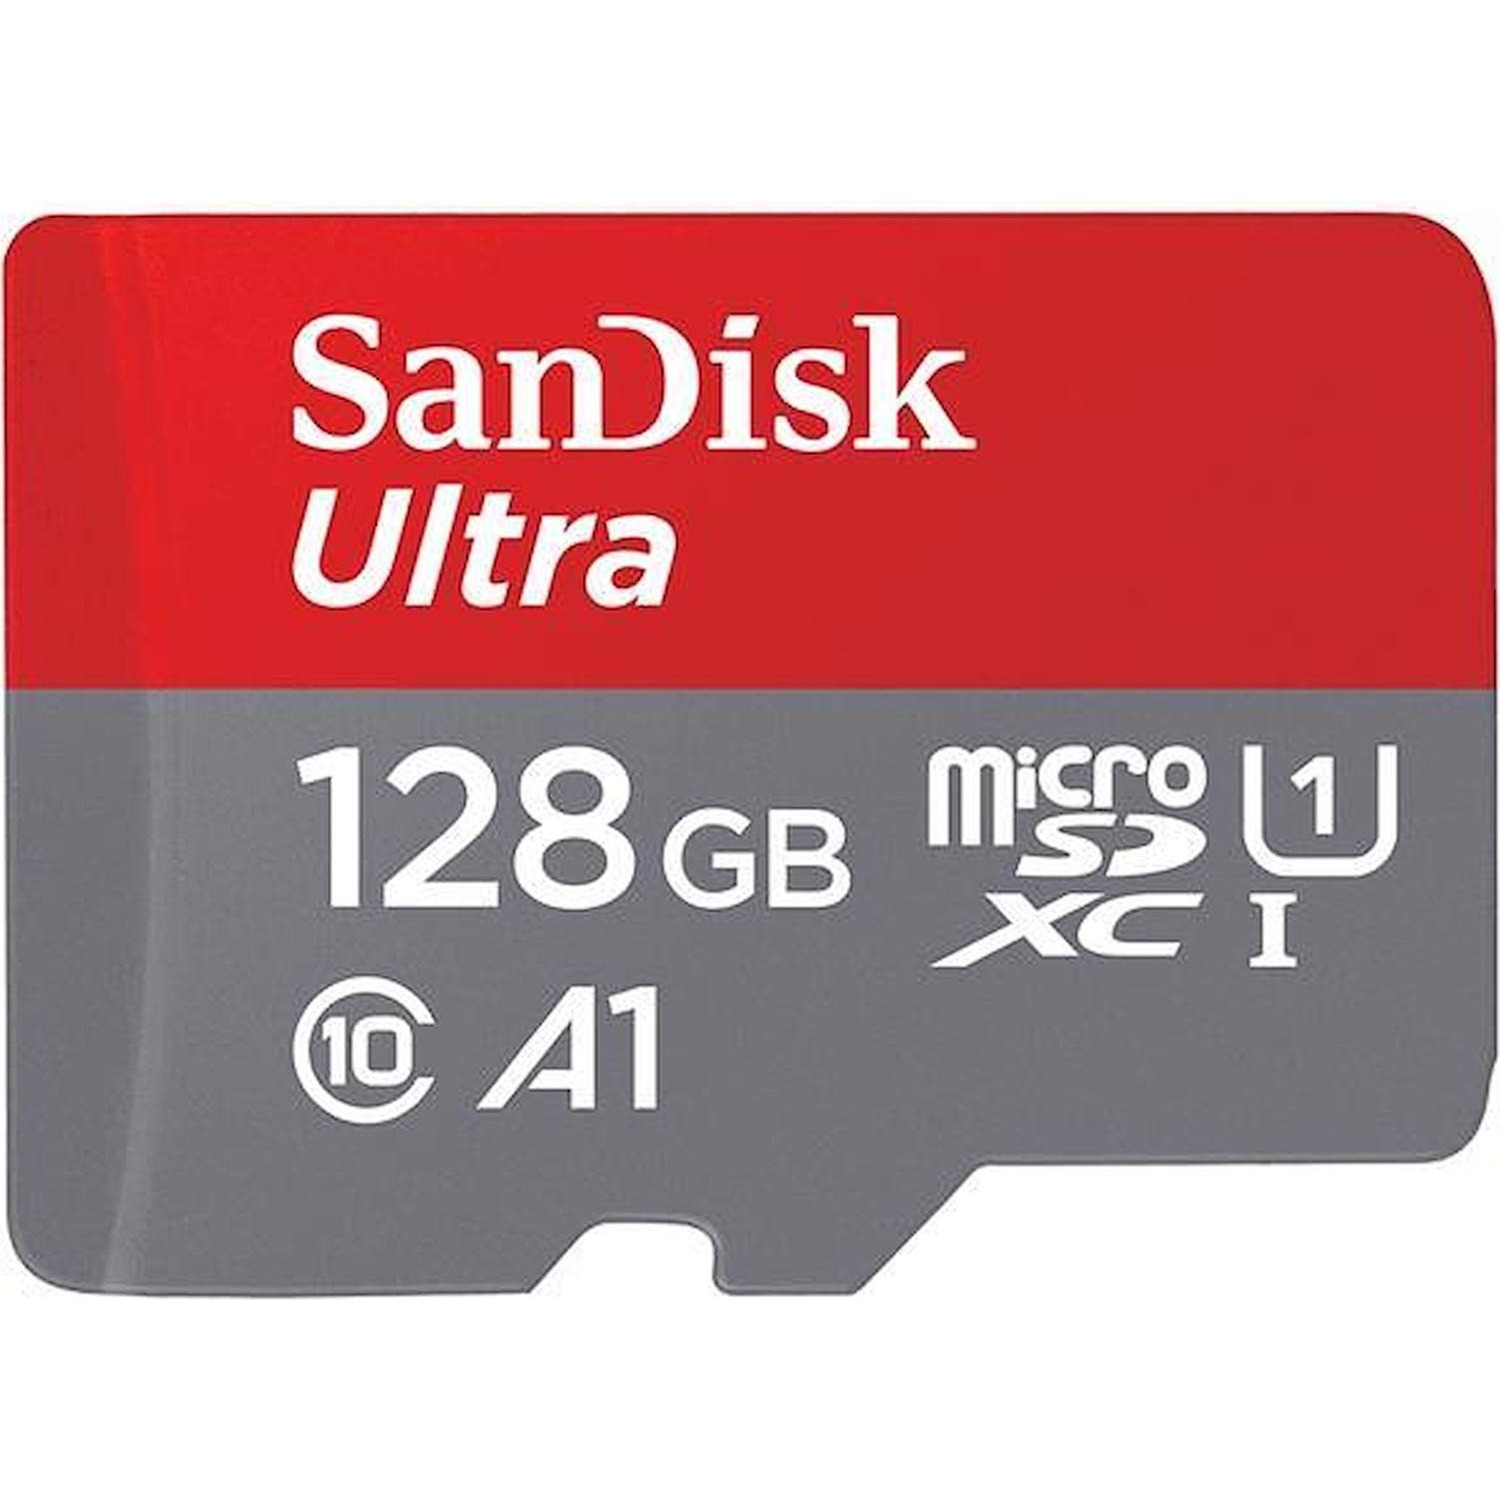 Immagine per MicroSD San DisK Ultra Mobile Android 128GB XC conadattatore SD da DIMOStore